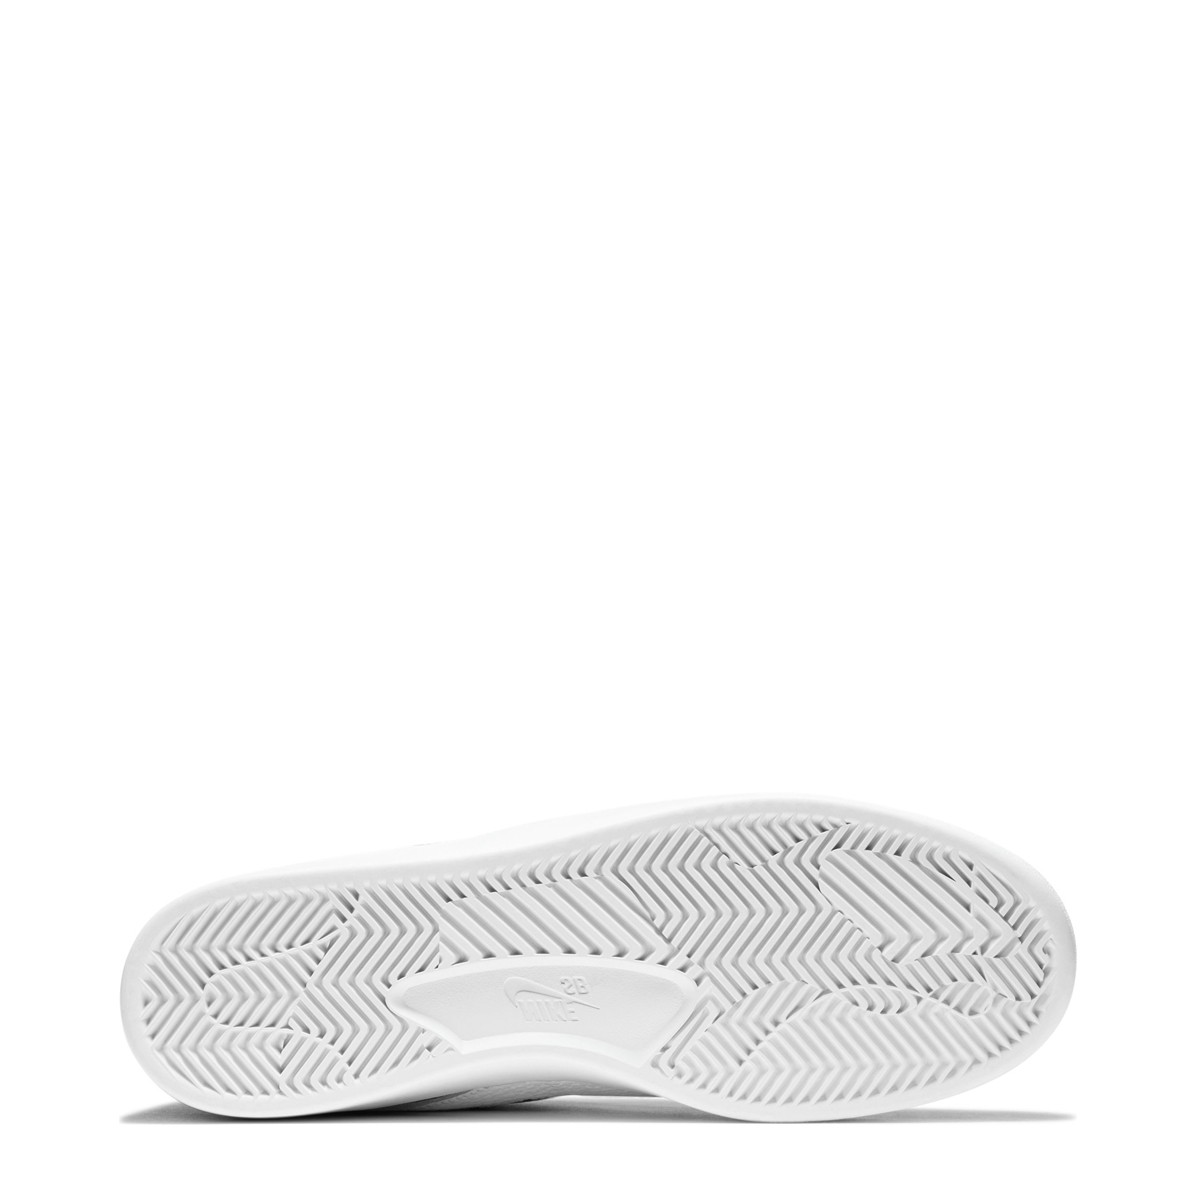 Nike SB Bruin React Erkek Ayakkabısı CJ1661-001